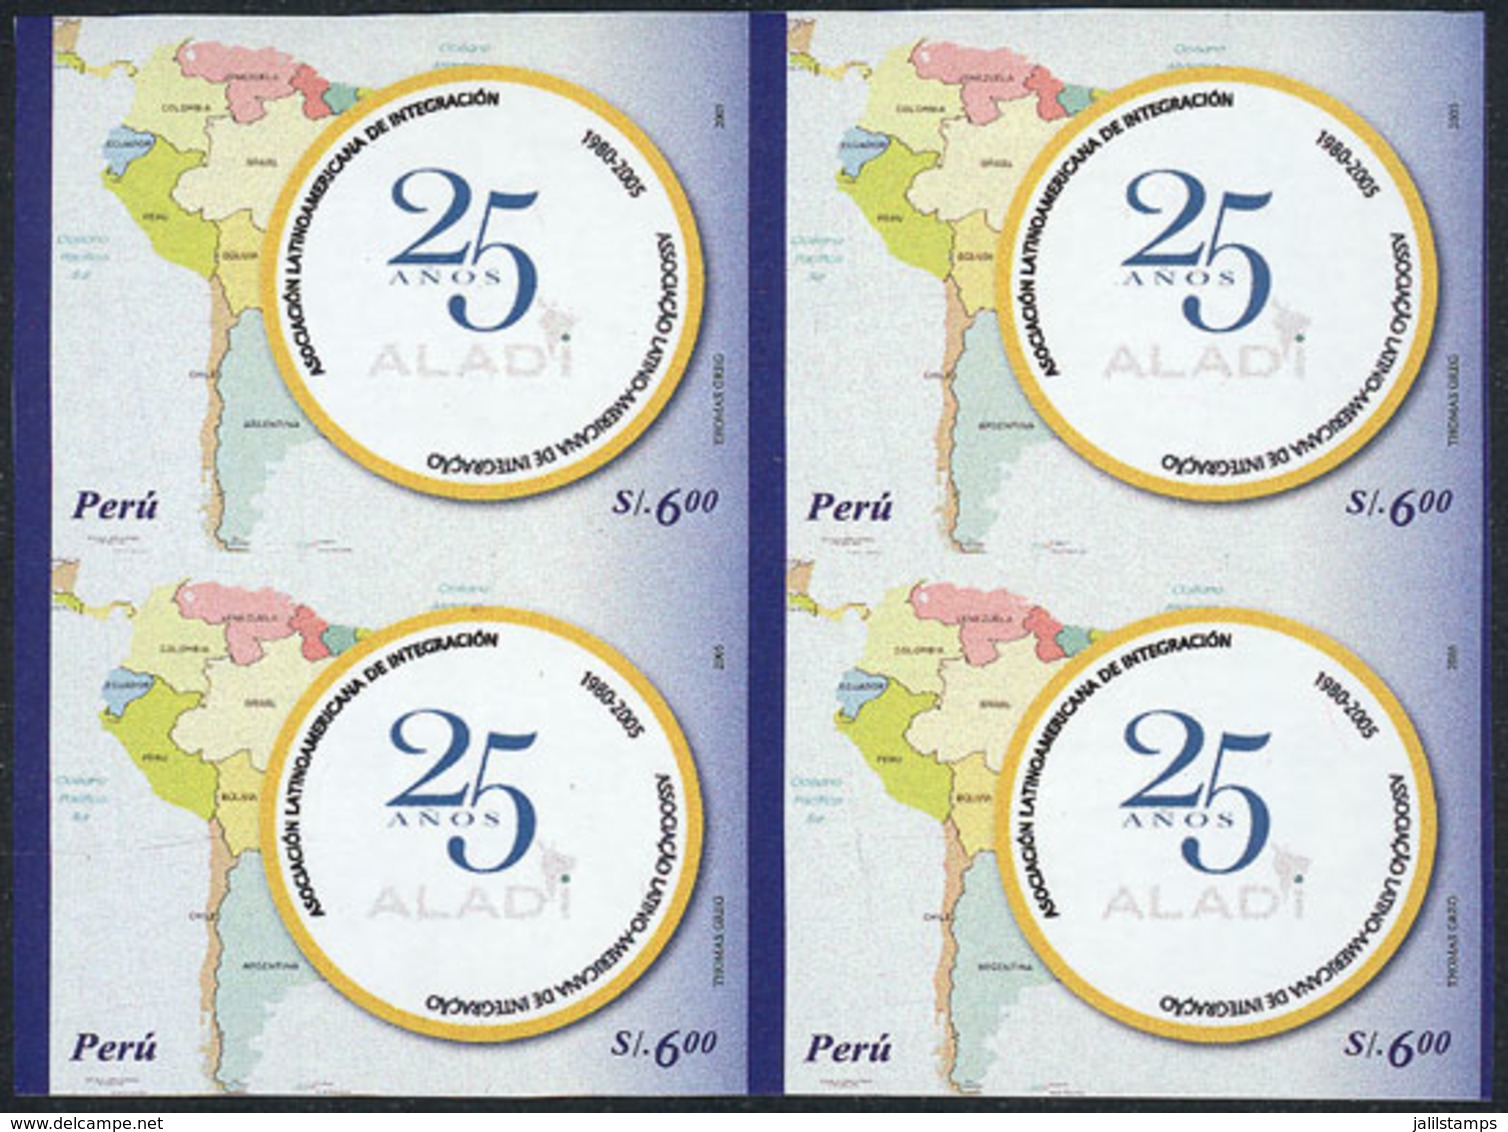 PERU: Sc.1513, 2006 ALADI 25th Anniversary (map Of Latin America), IMPERFORATE BLOCK OF 4, Very Fine Quality, Rare! - Peru